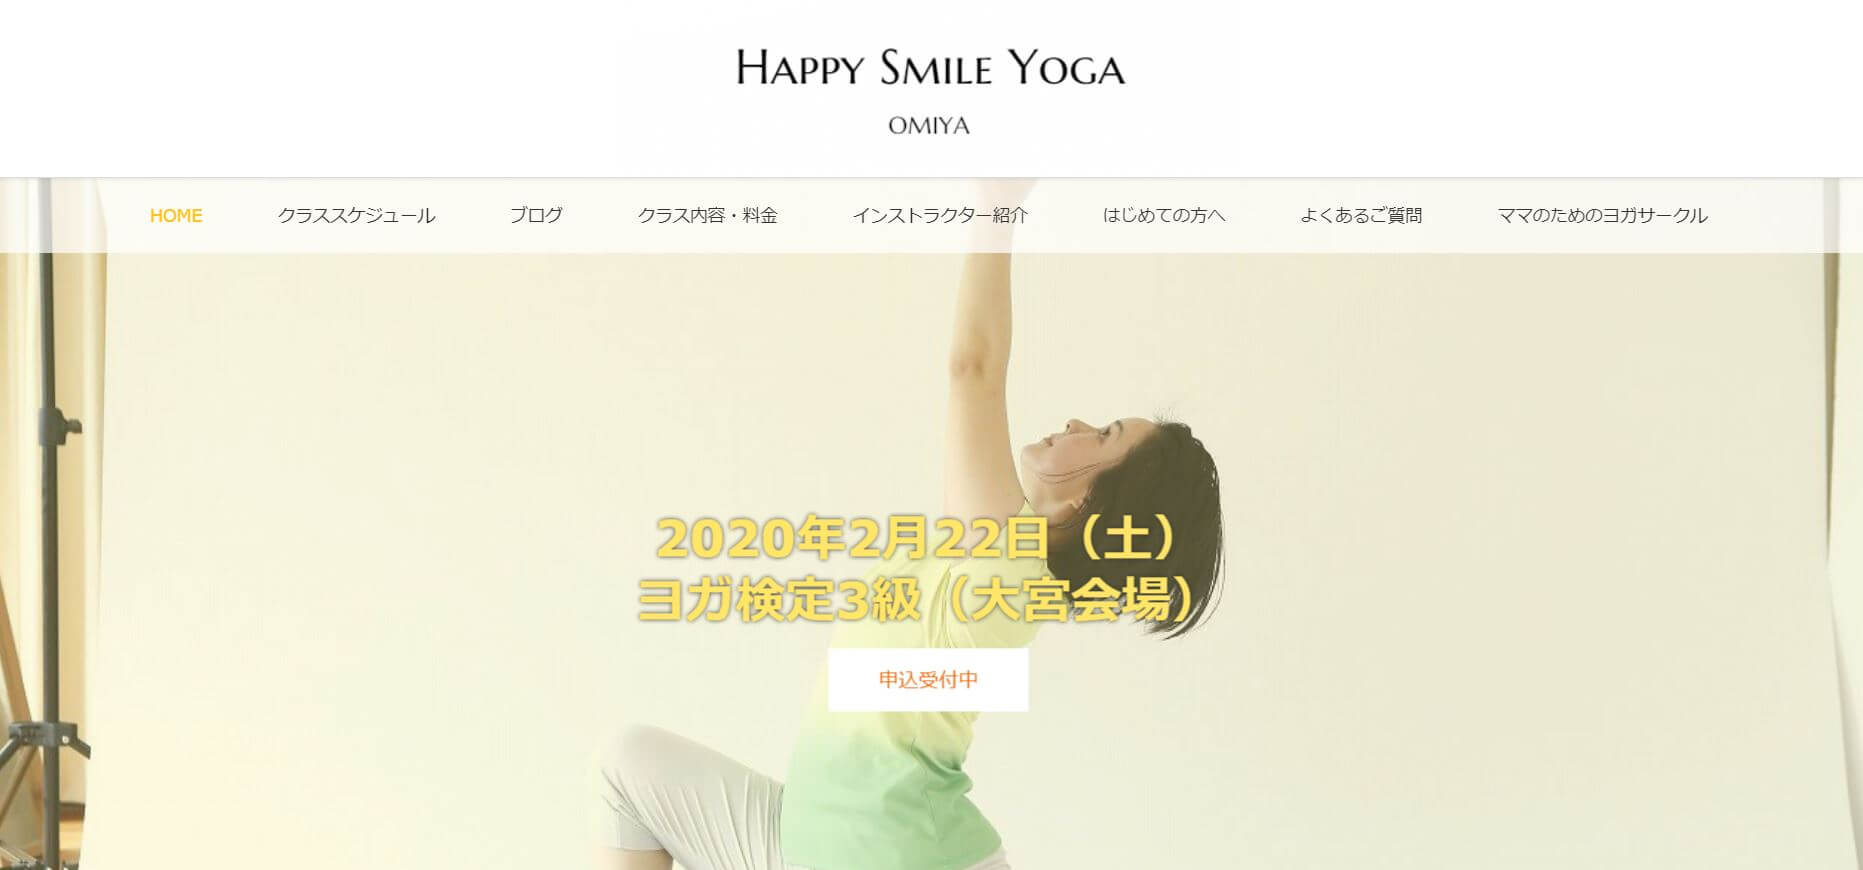 Happy Smile Yoga OMIYA